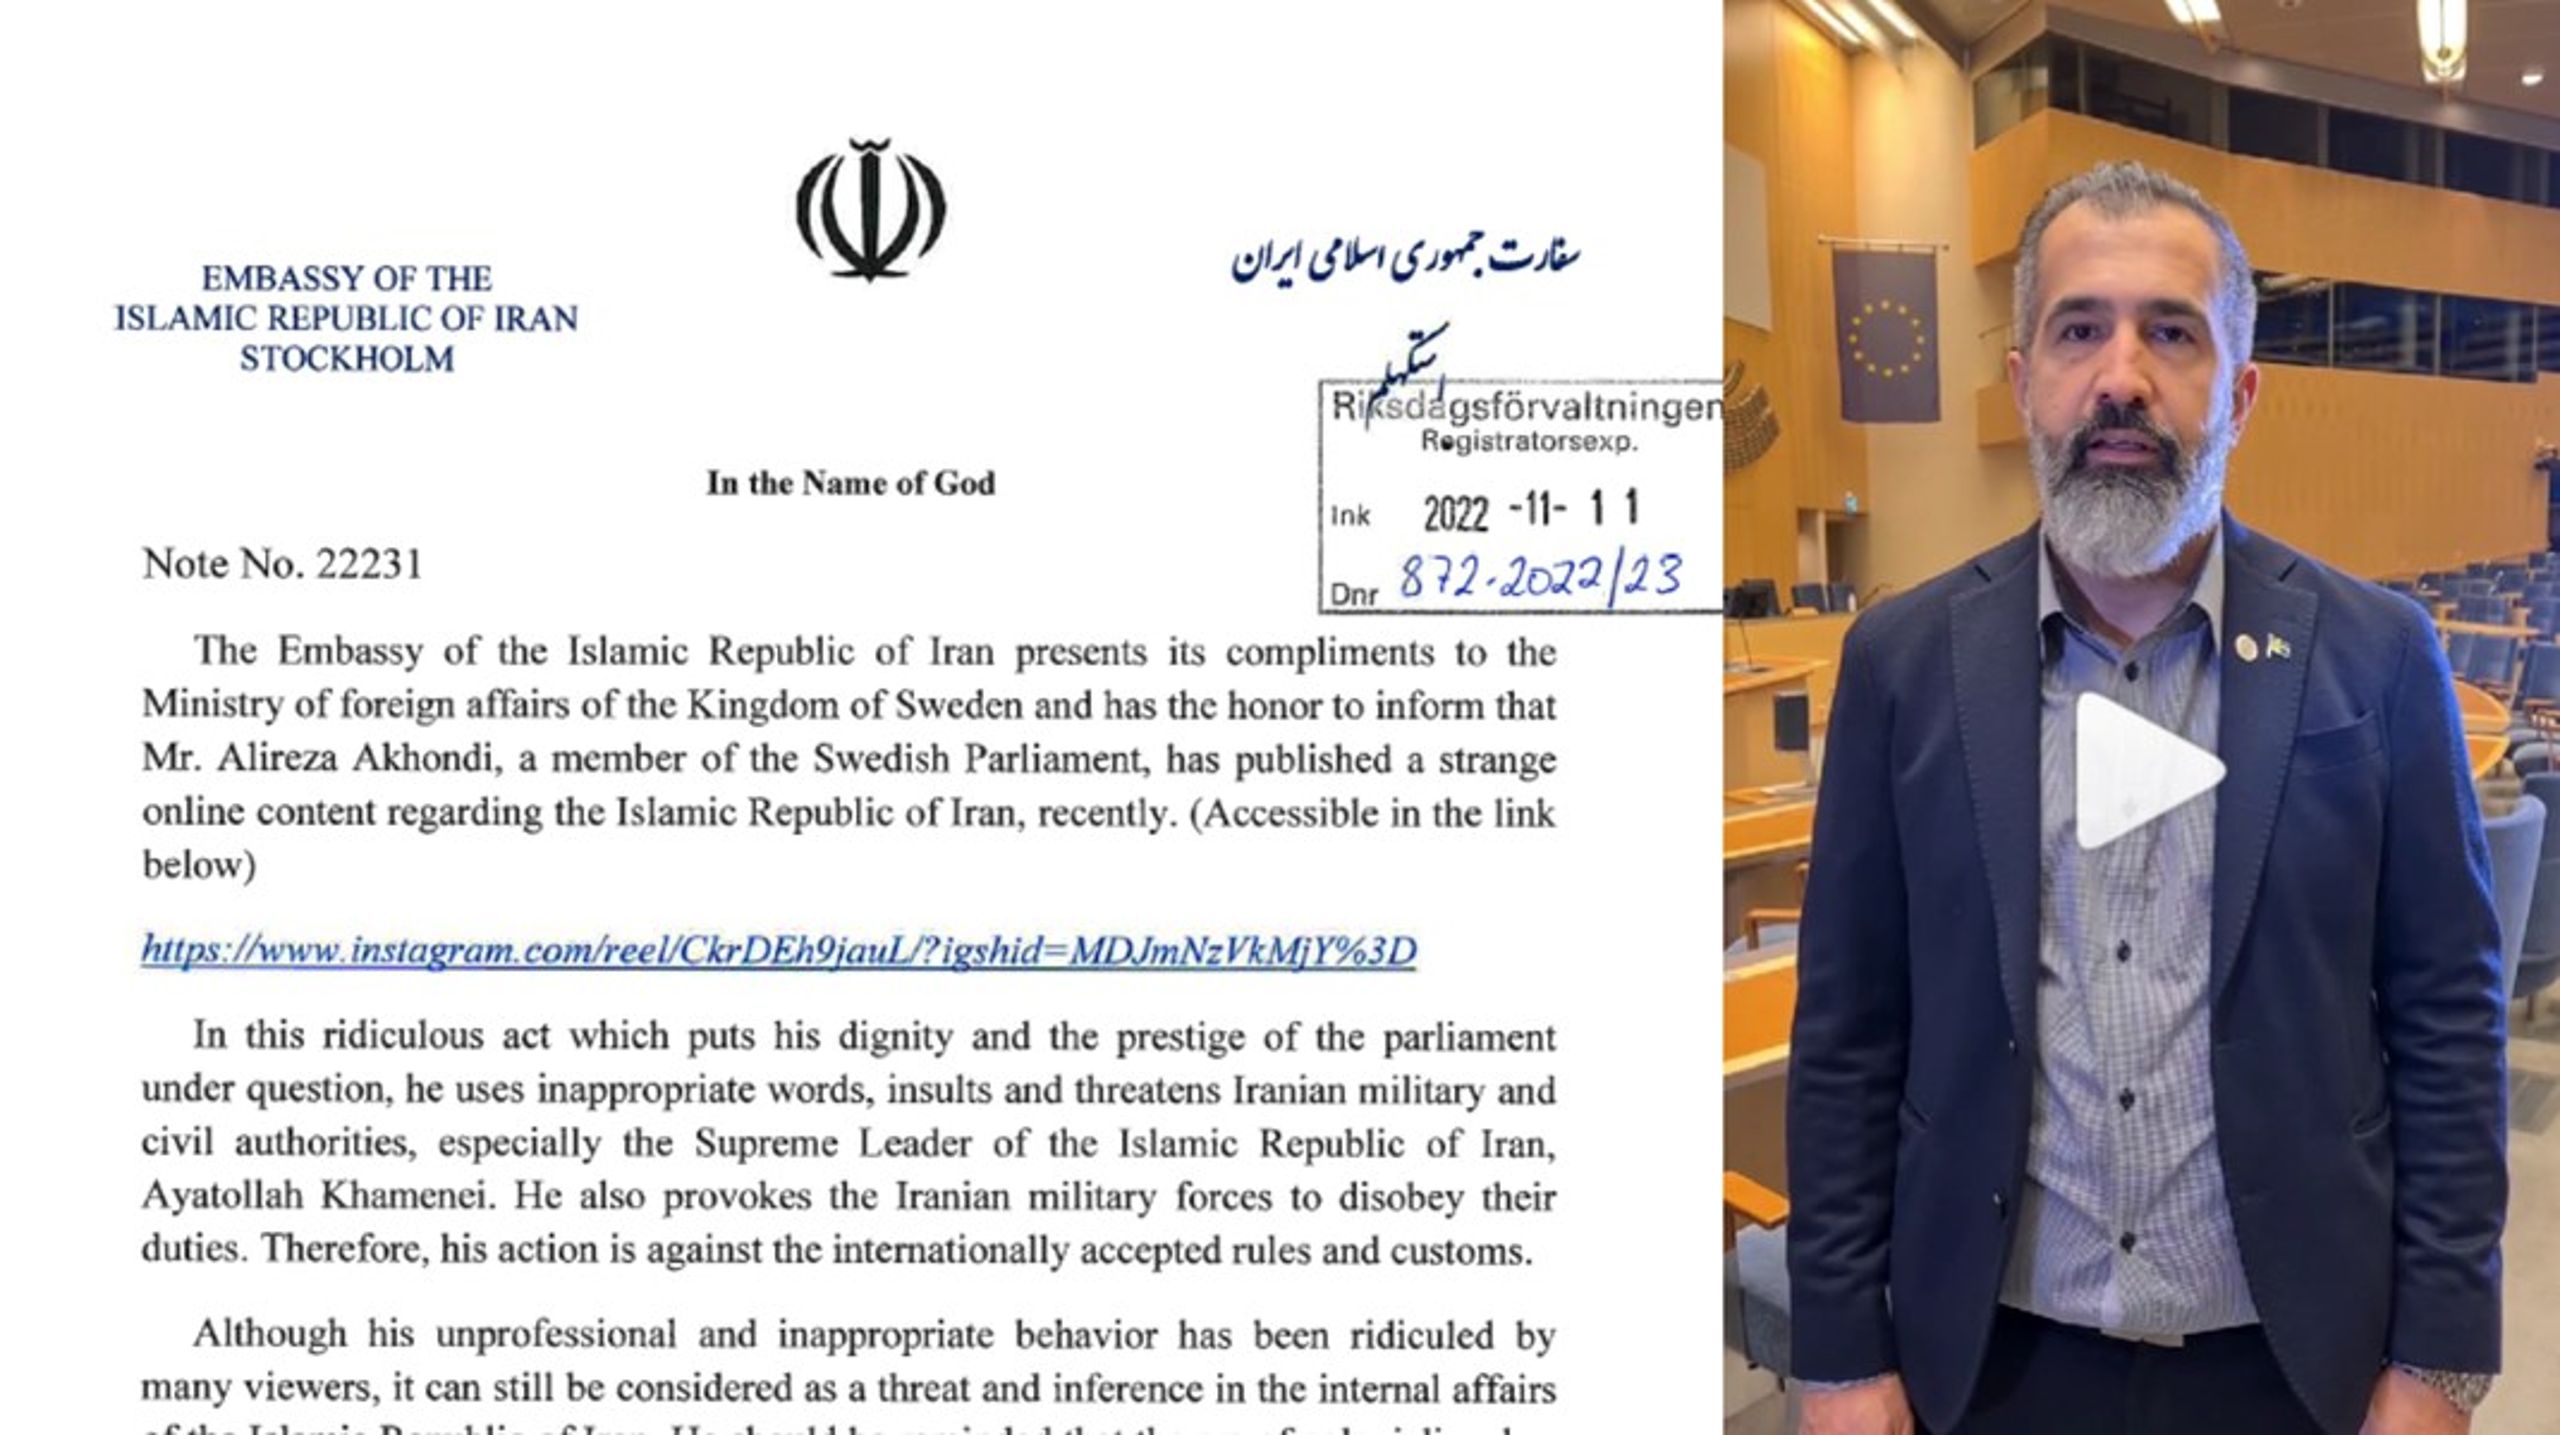 Skrivelsen från Irans ambassad har adresserats till det svenska utrikesdepartementet, med kopia till Sveriges riksdag där Alireza Akhondi (C) är ledamot sedan 2018.